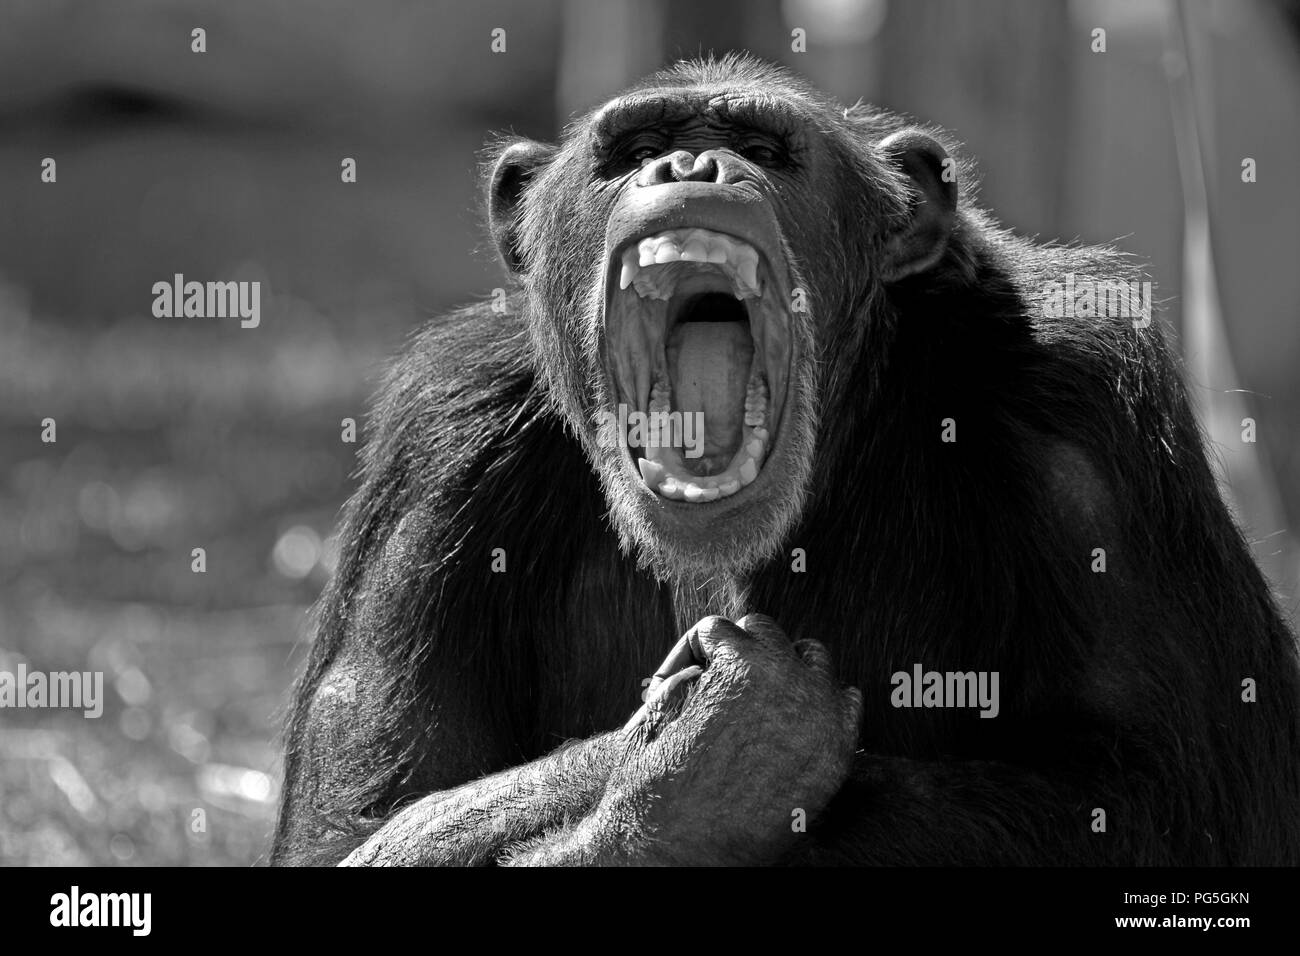 Schwarz-weiß Foto eines gemeinsamen Schimpanse (S. troglodytes) bei Monkey Town Primatenzentrum, Somerset West, Südafrika. Stockfoto